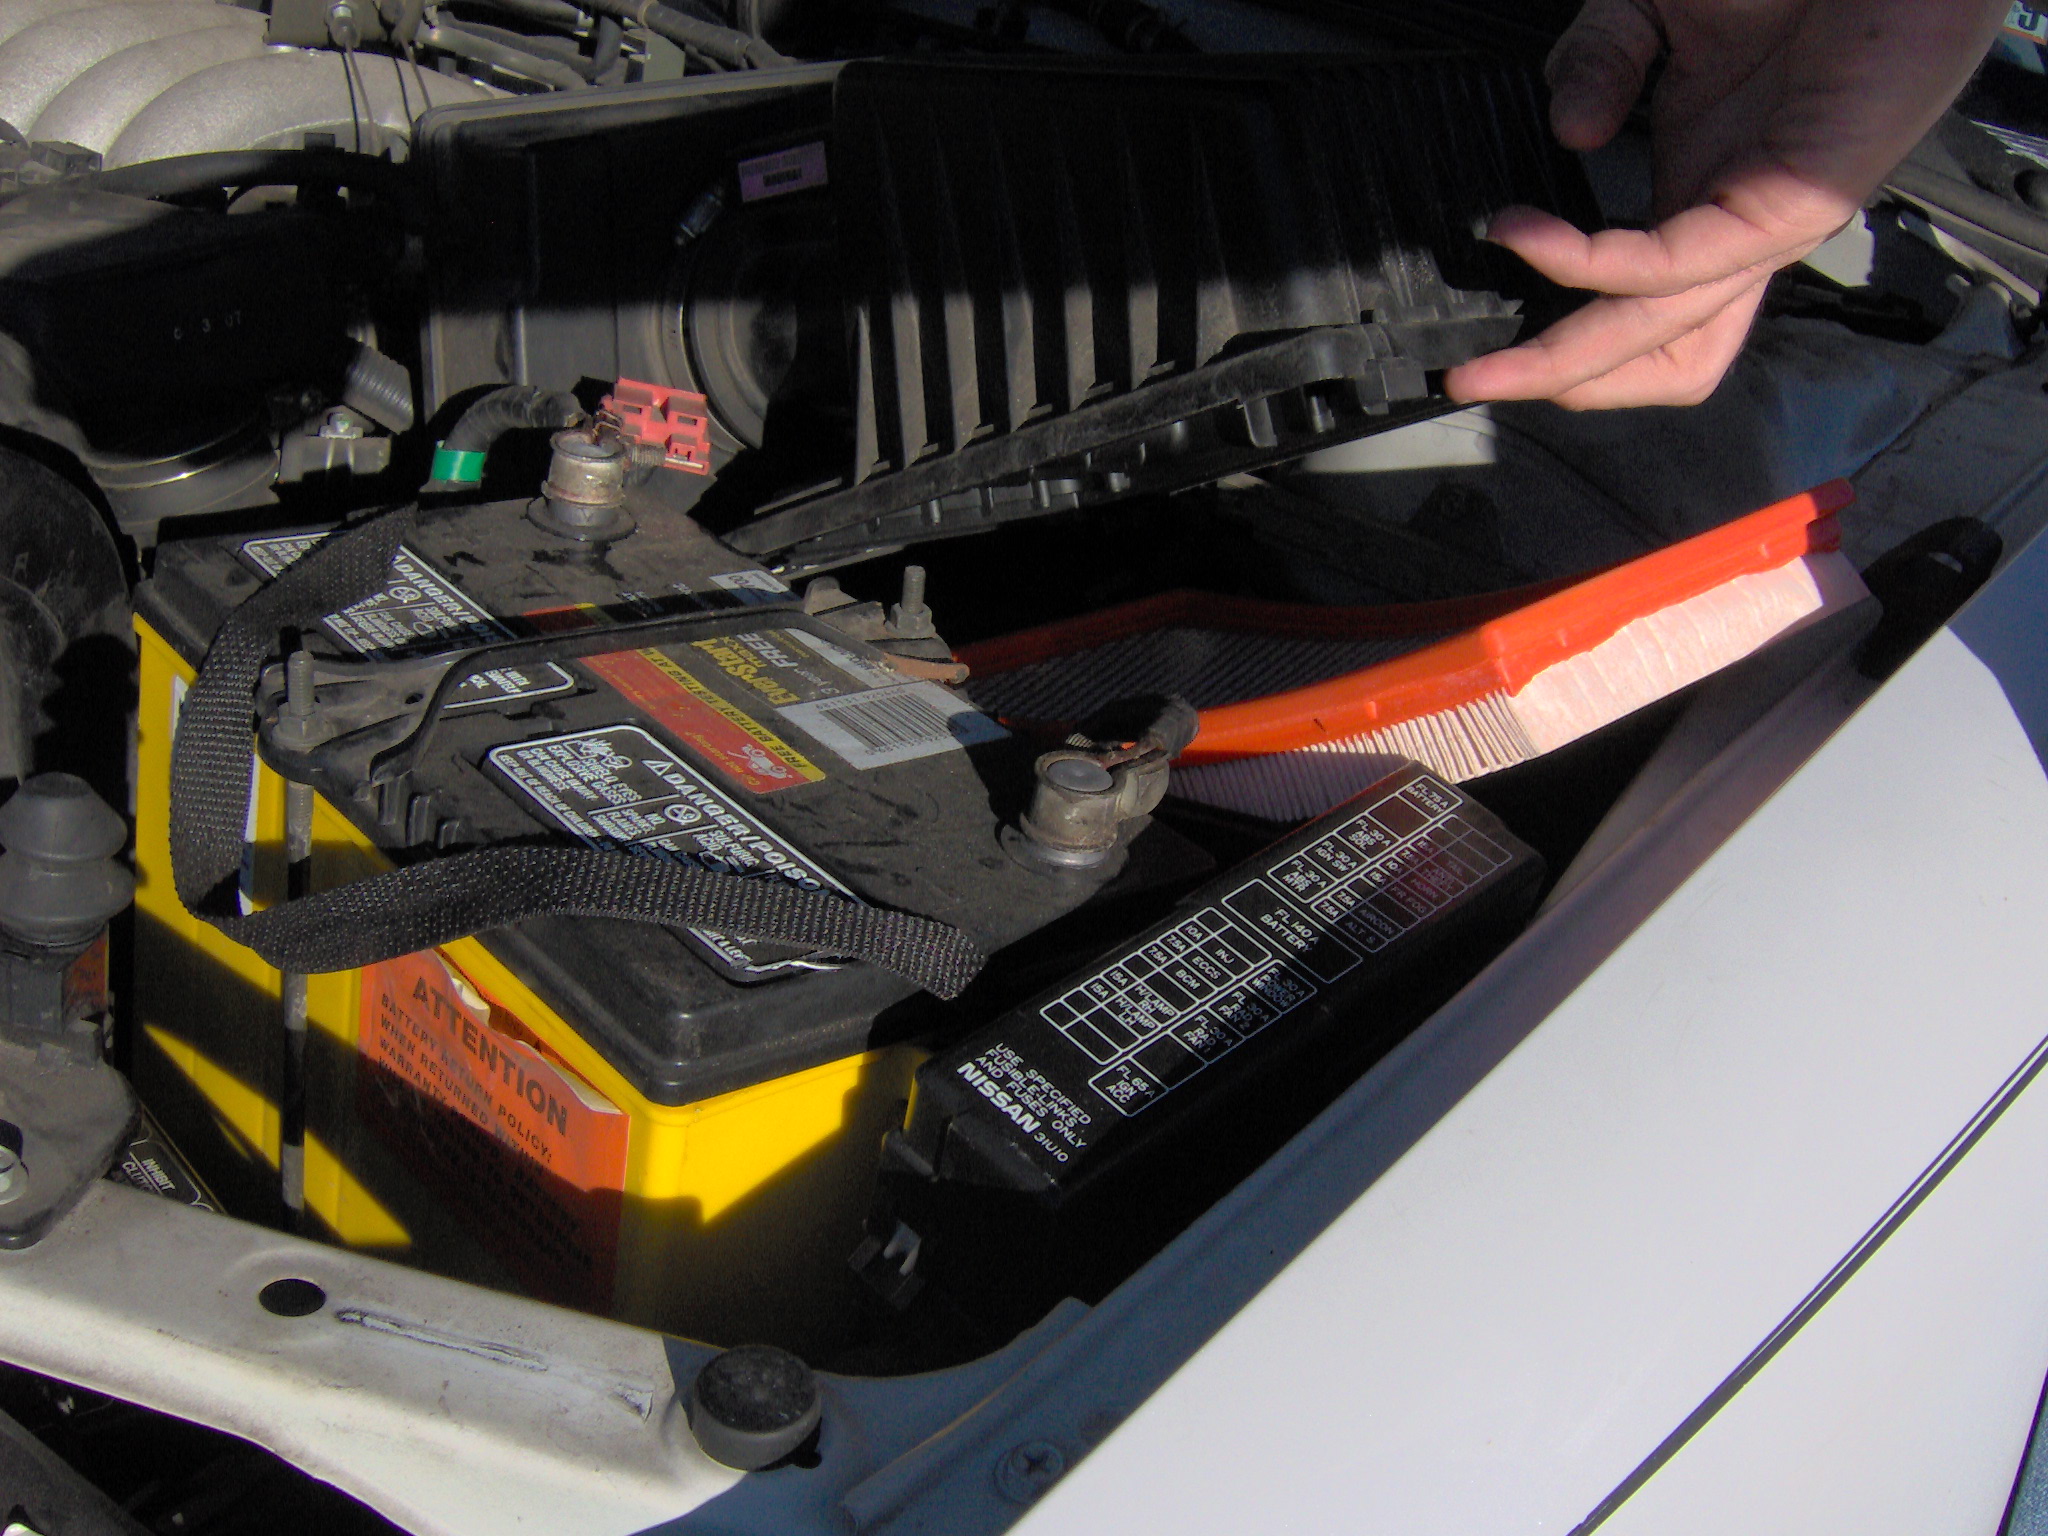 Mechanic-free DIY car repairs